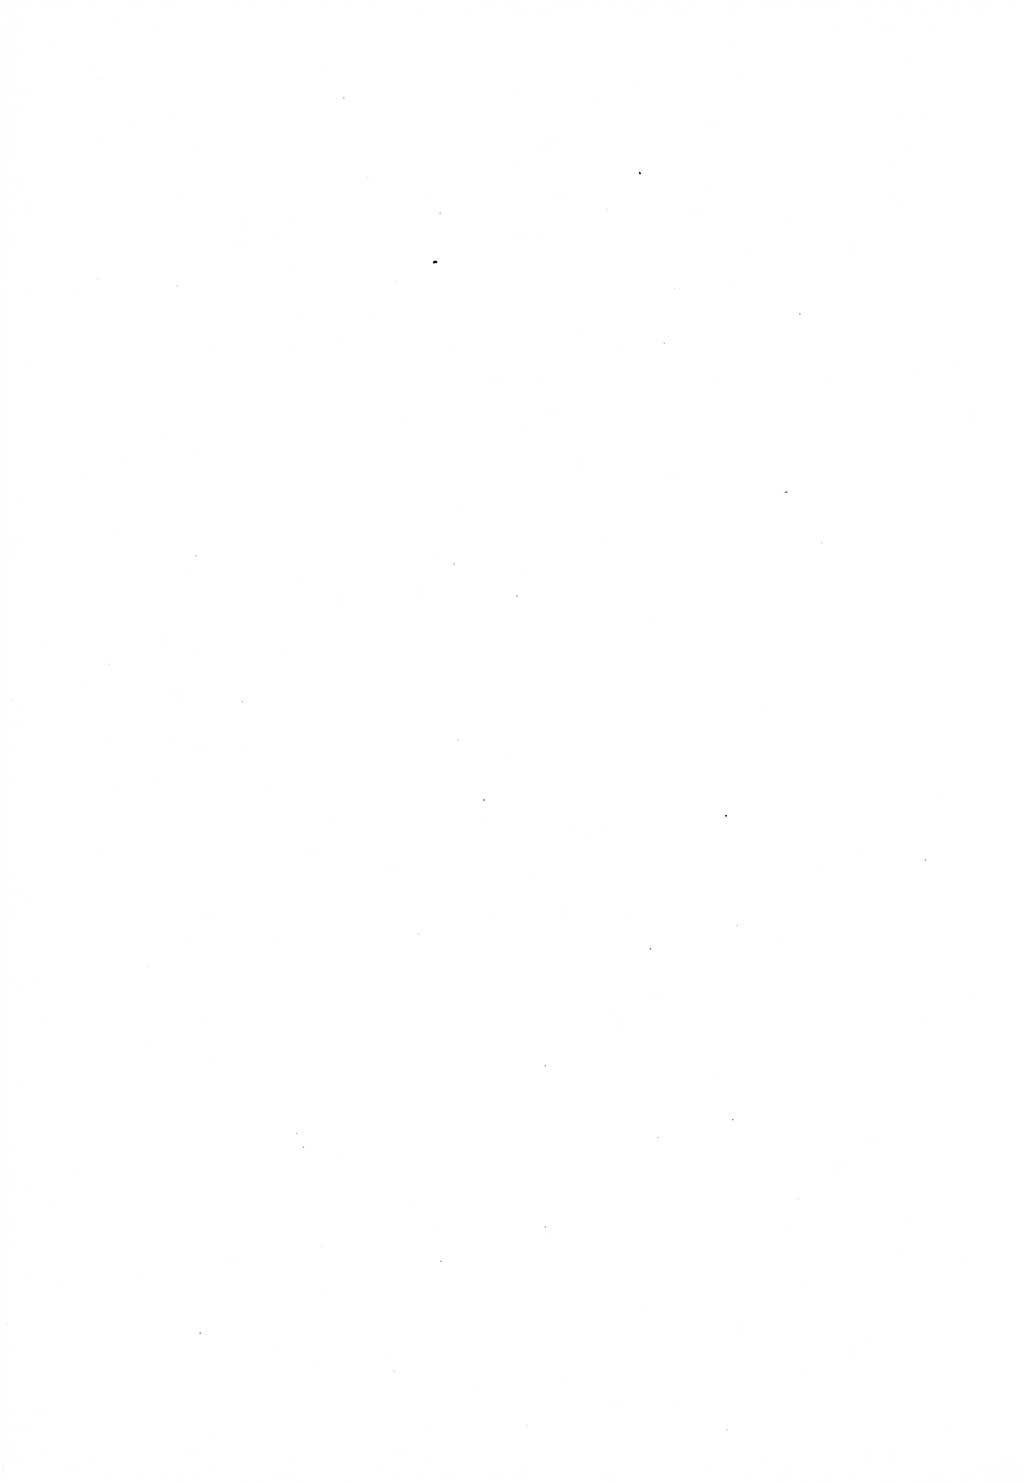 Strafrecht der Deutschen Demokratischen Republik (DDR), Lehrkommentar zum Strafgesetzbuch (StGB), Allgemeiner Teil 1970, Seite 8 (Strafr. DDR Lehrkomm. StGB AT 1970, S. 8)